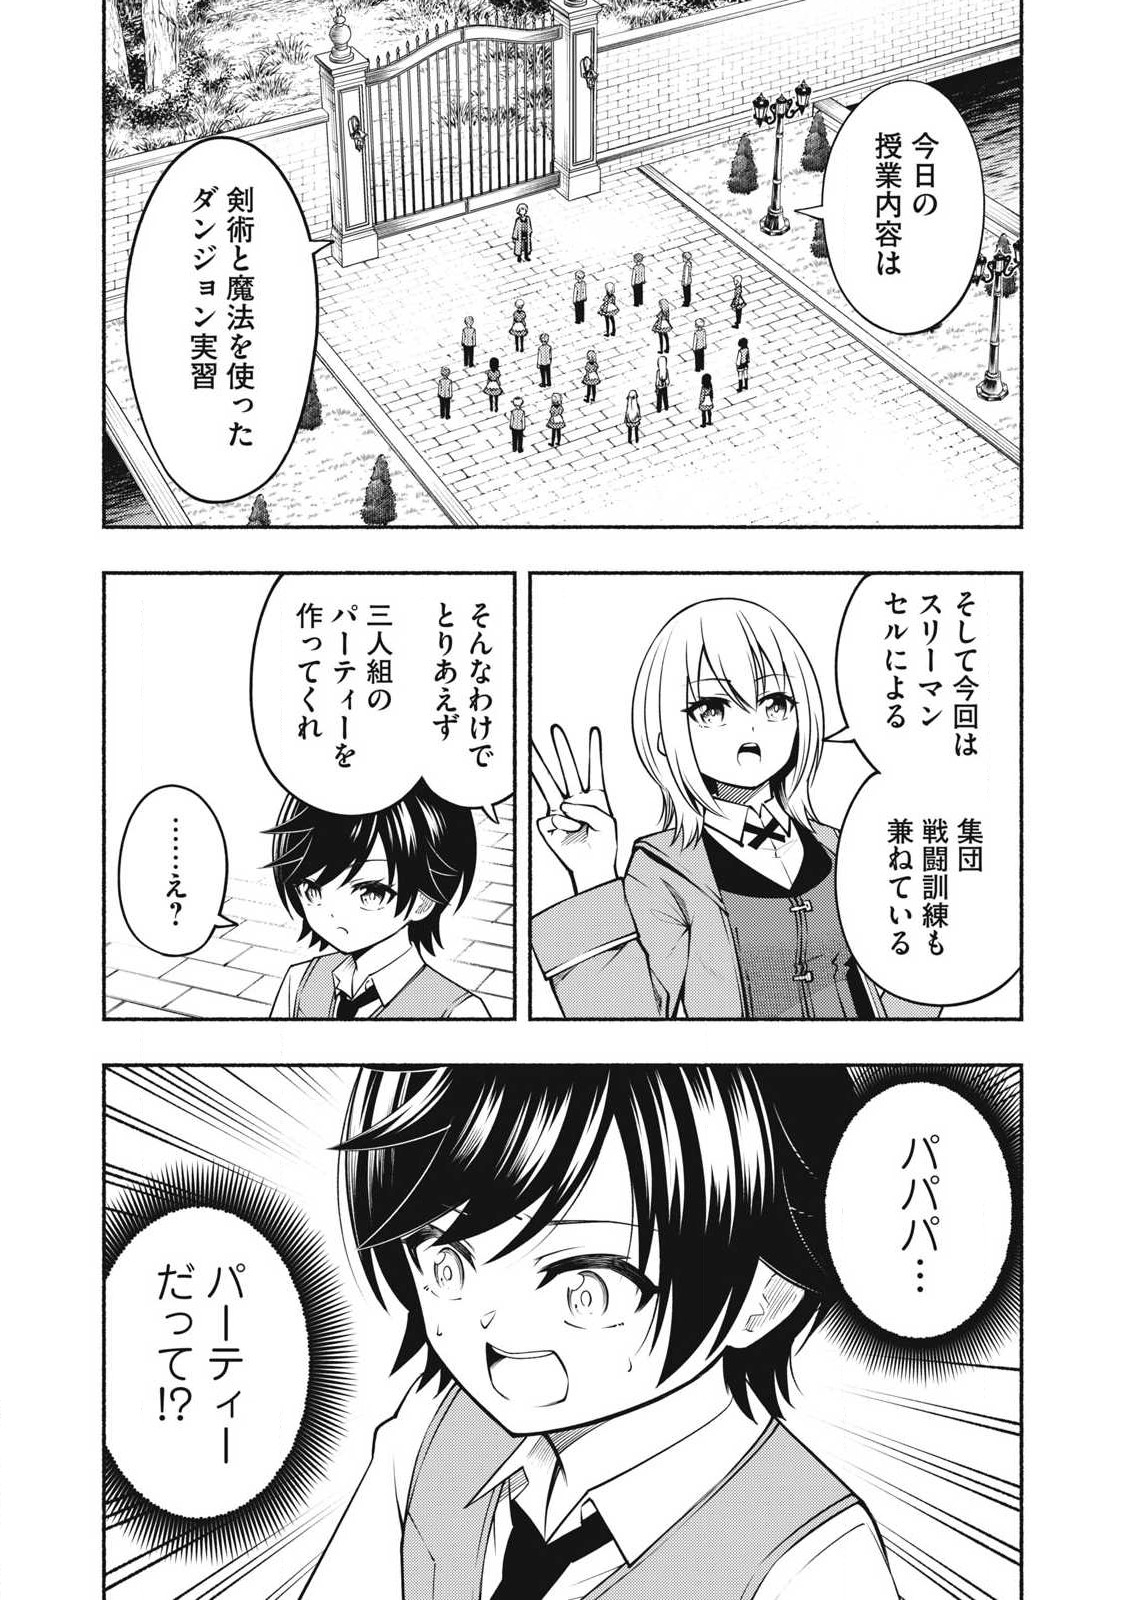 Yama ni Suterareta Ore, Tokage no Youshi ni Naru - Chapter 7.1 - Page 1